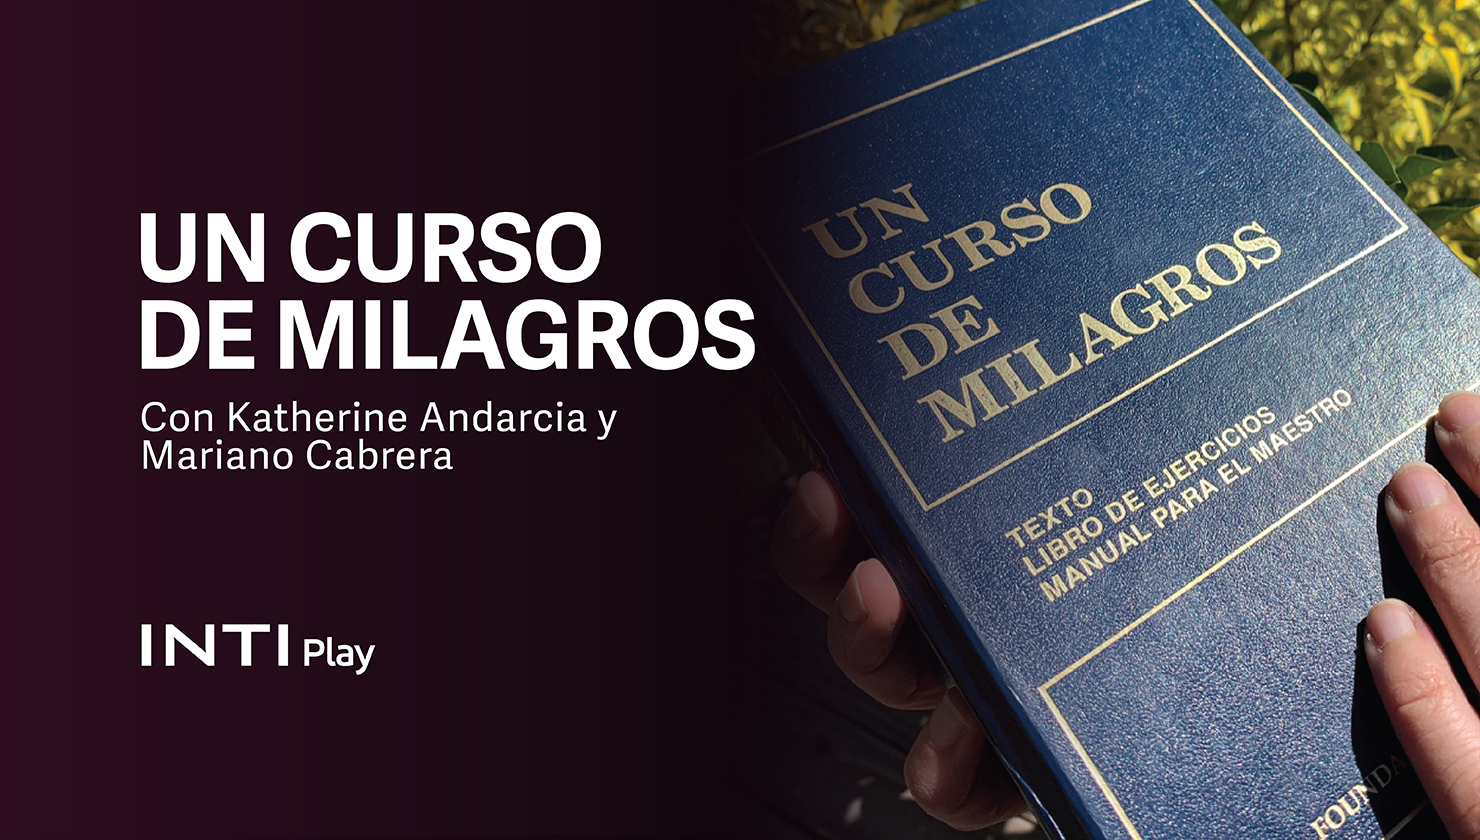 INTI CURSOS - UN CURSO DE MILAGROS CON KATHERINE ANDARCIA Y MARIANO CABRERA